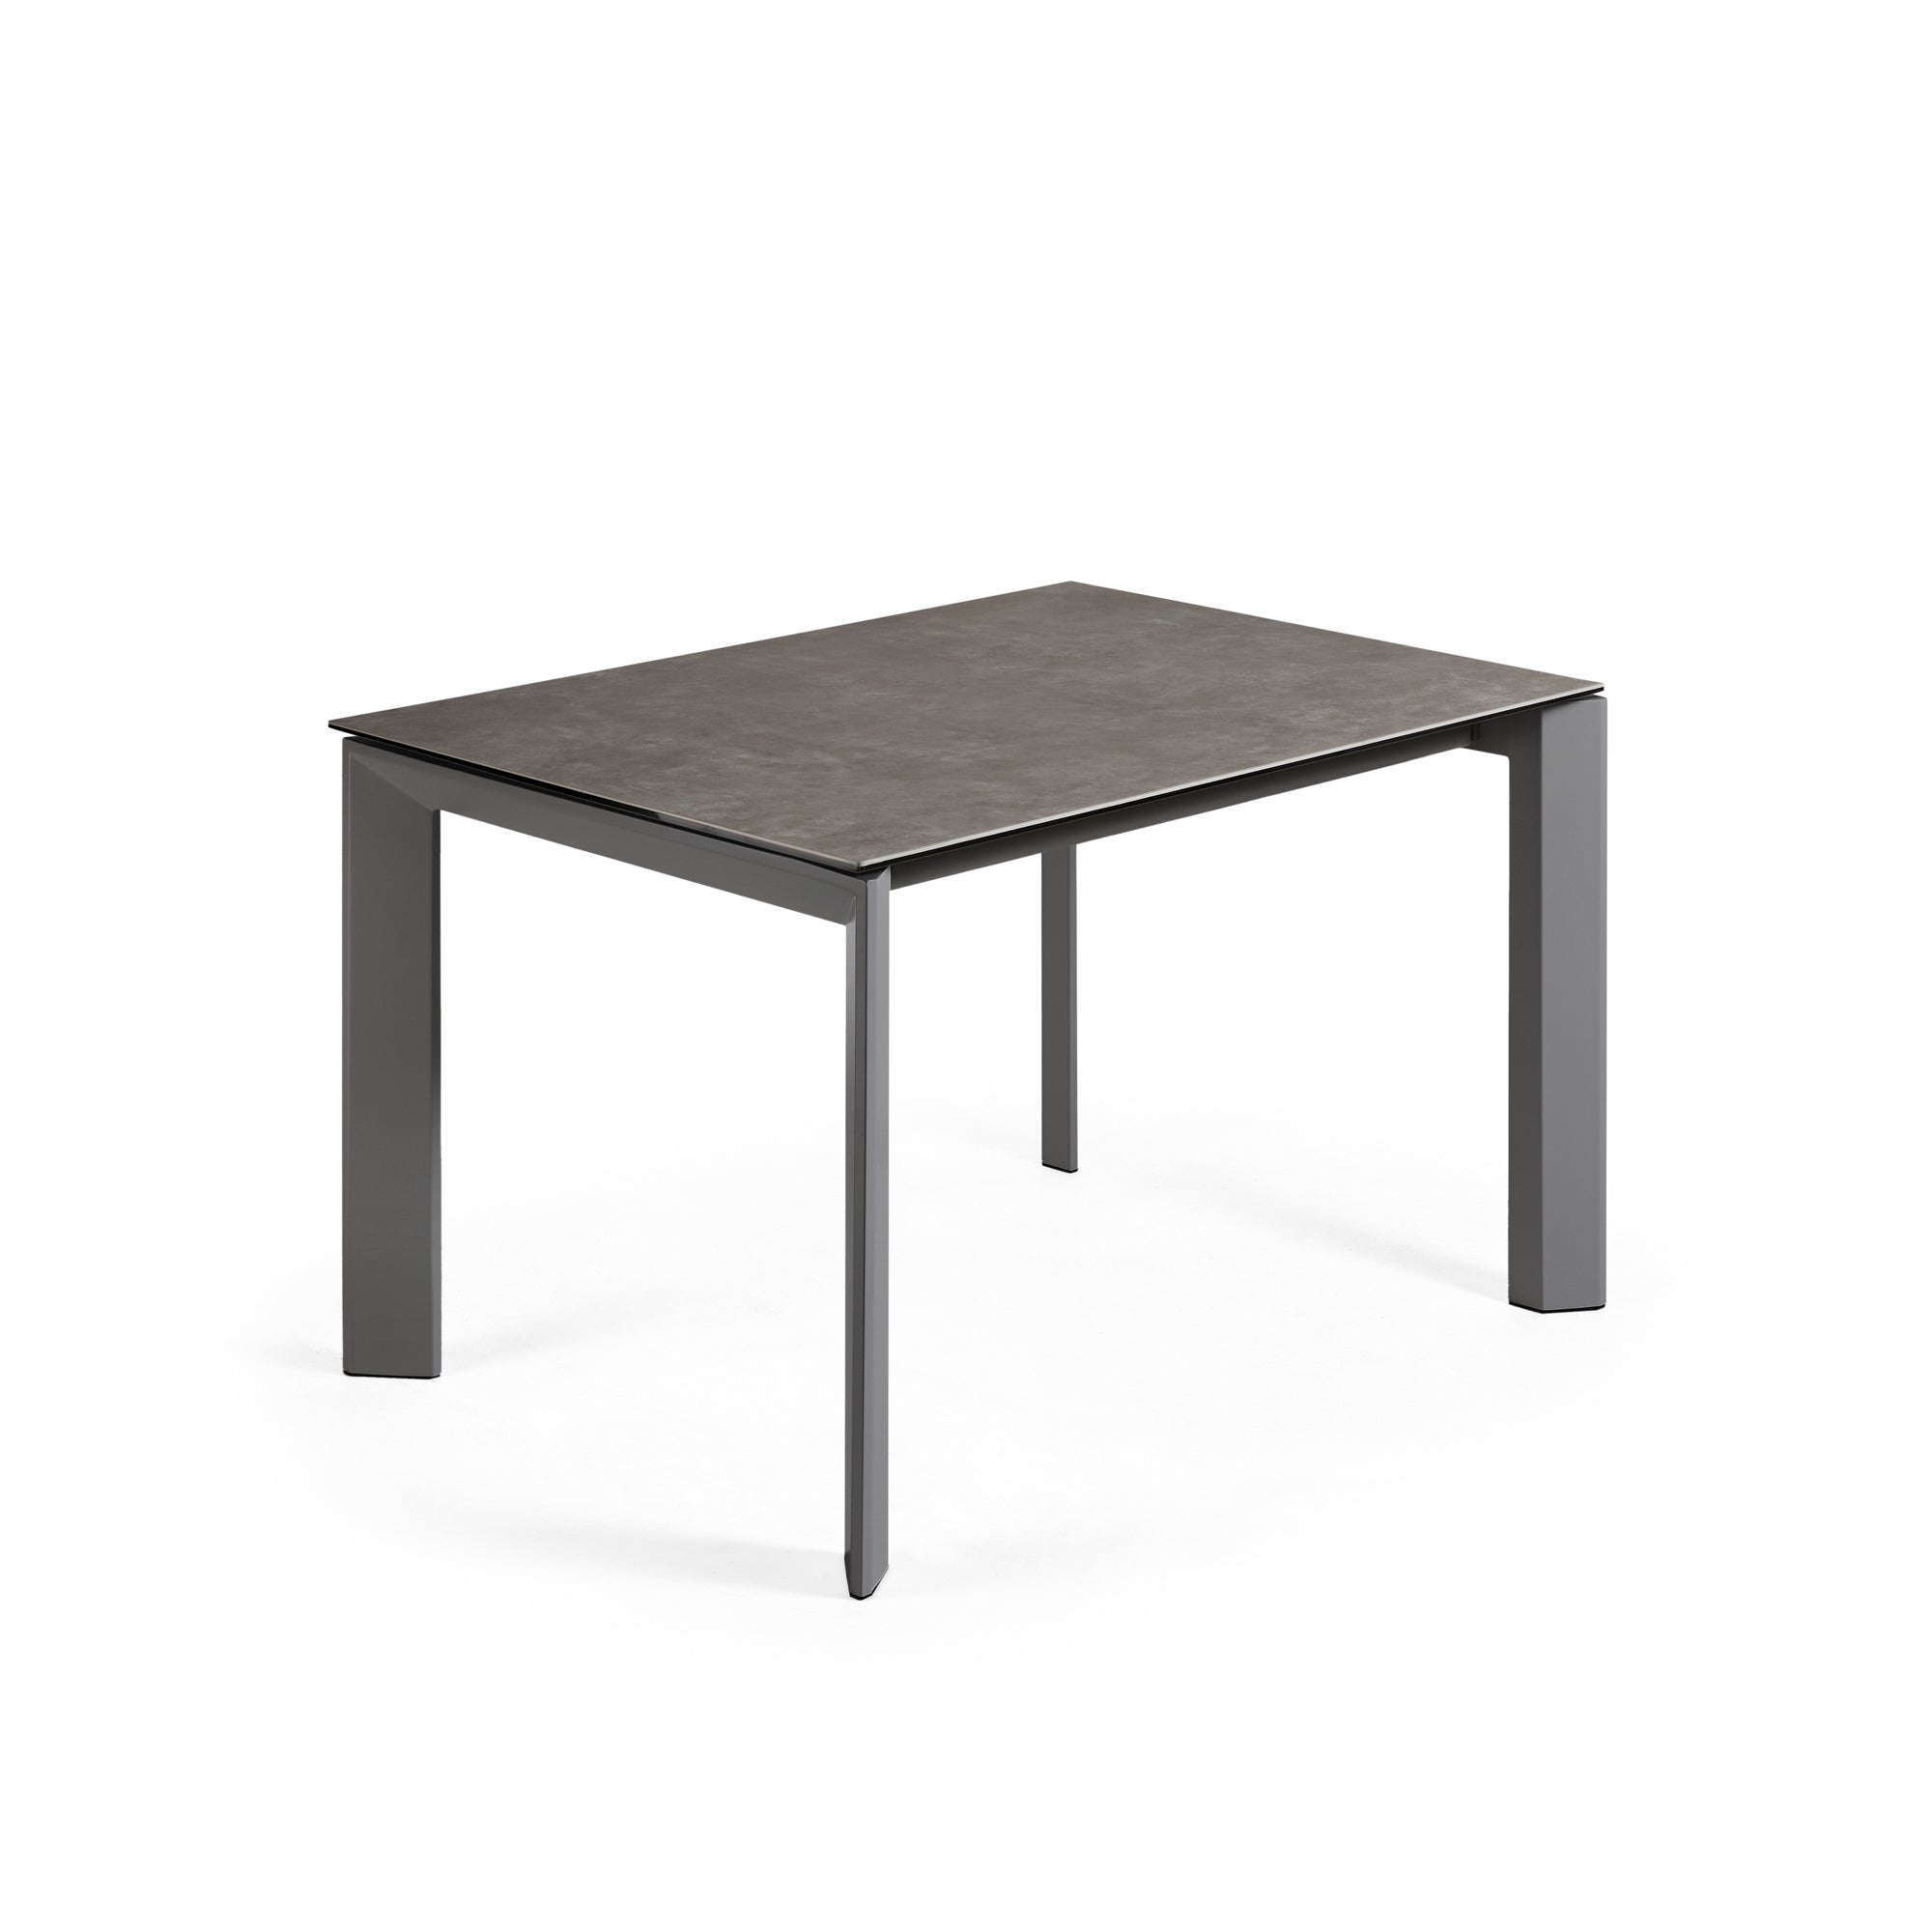 Axis kihúzható kerámia asztal Vulcano Ceniza befejezéssel, antracit acél lábakkal 120 (180)cm